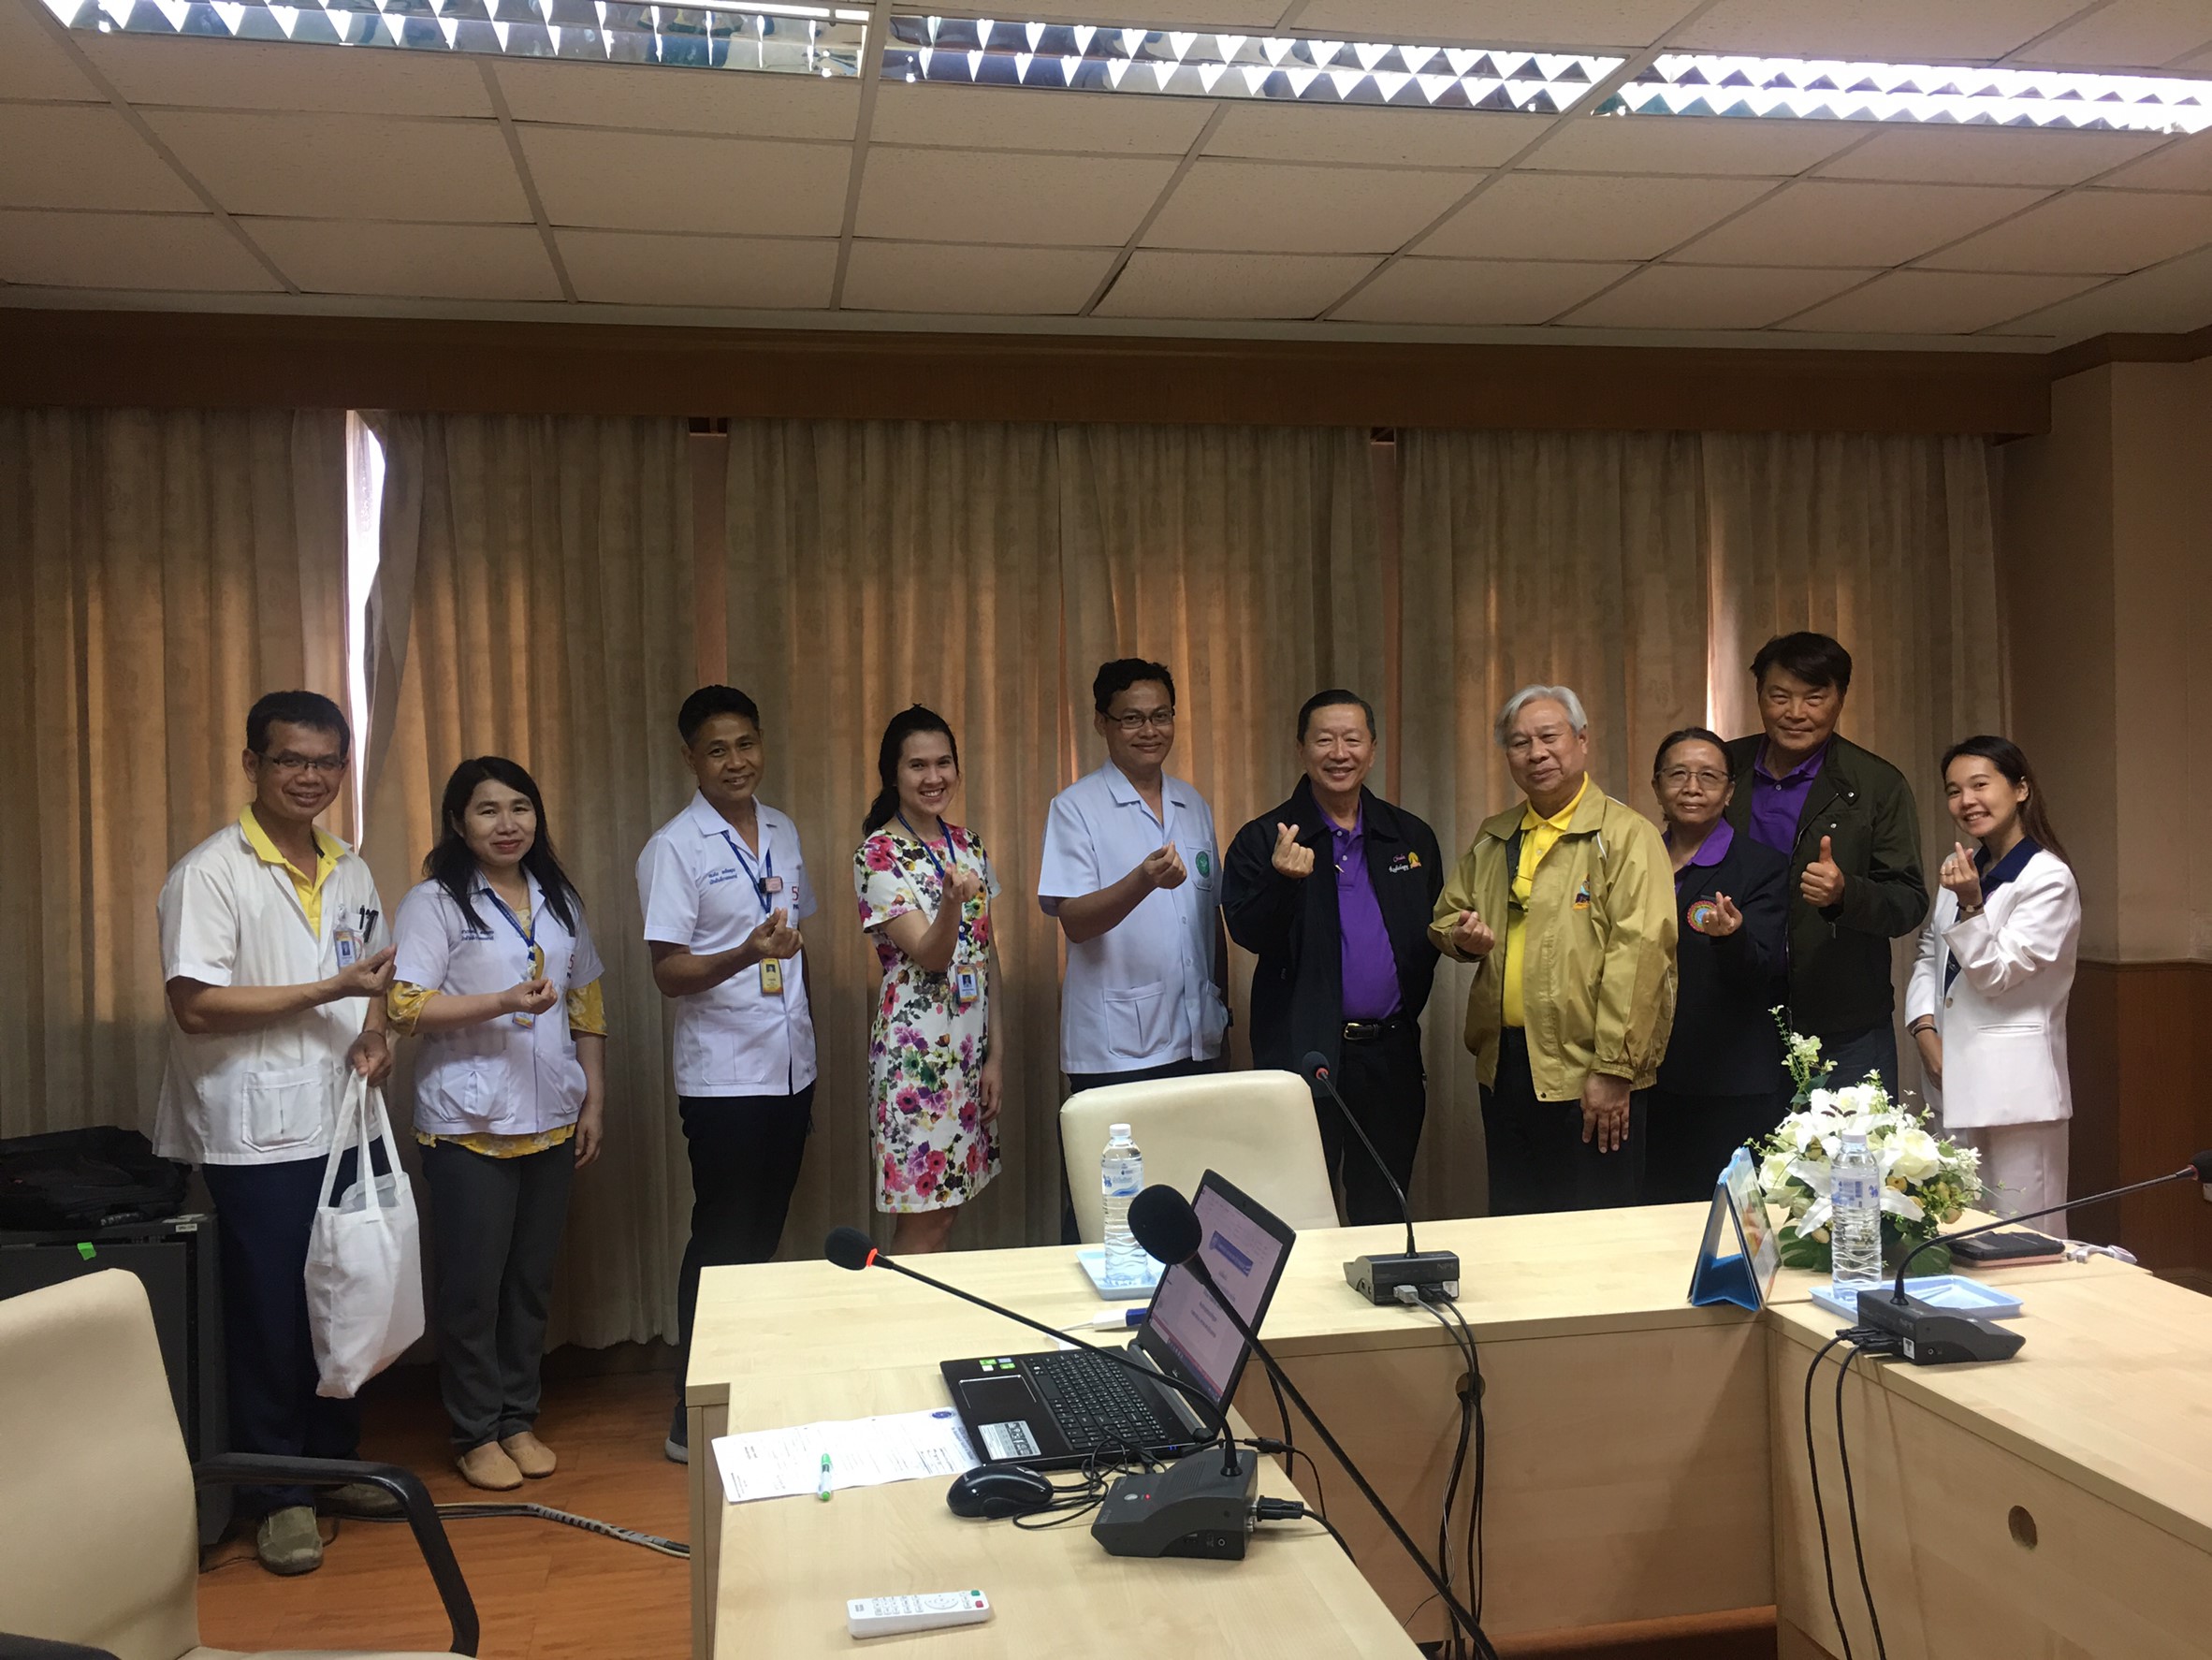 ประชุมวิชาการร่วมกับรังสีการแพทย์แห่งประเทศไทย ครั้งที่17 27-29 พ.ย. - พร้อมเข้าเยี่ยมและให้กำลังใจหน่วยงานรังสีวิทยาในพื้นที่จังหวัดอุบลราชธานีระหว่างวันที่ 25-26 พฤศจิกายน 2562 27